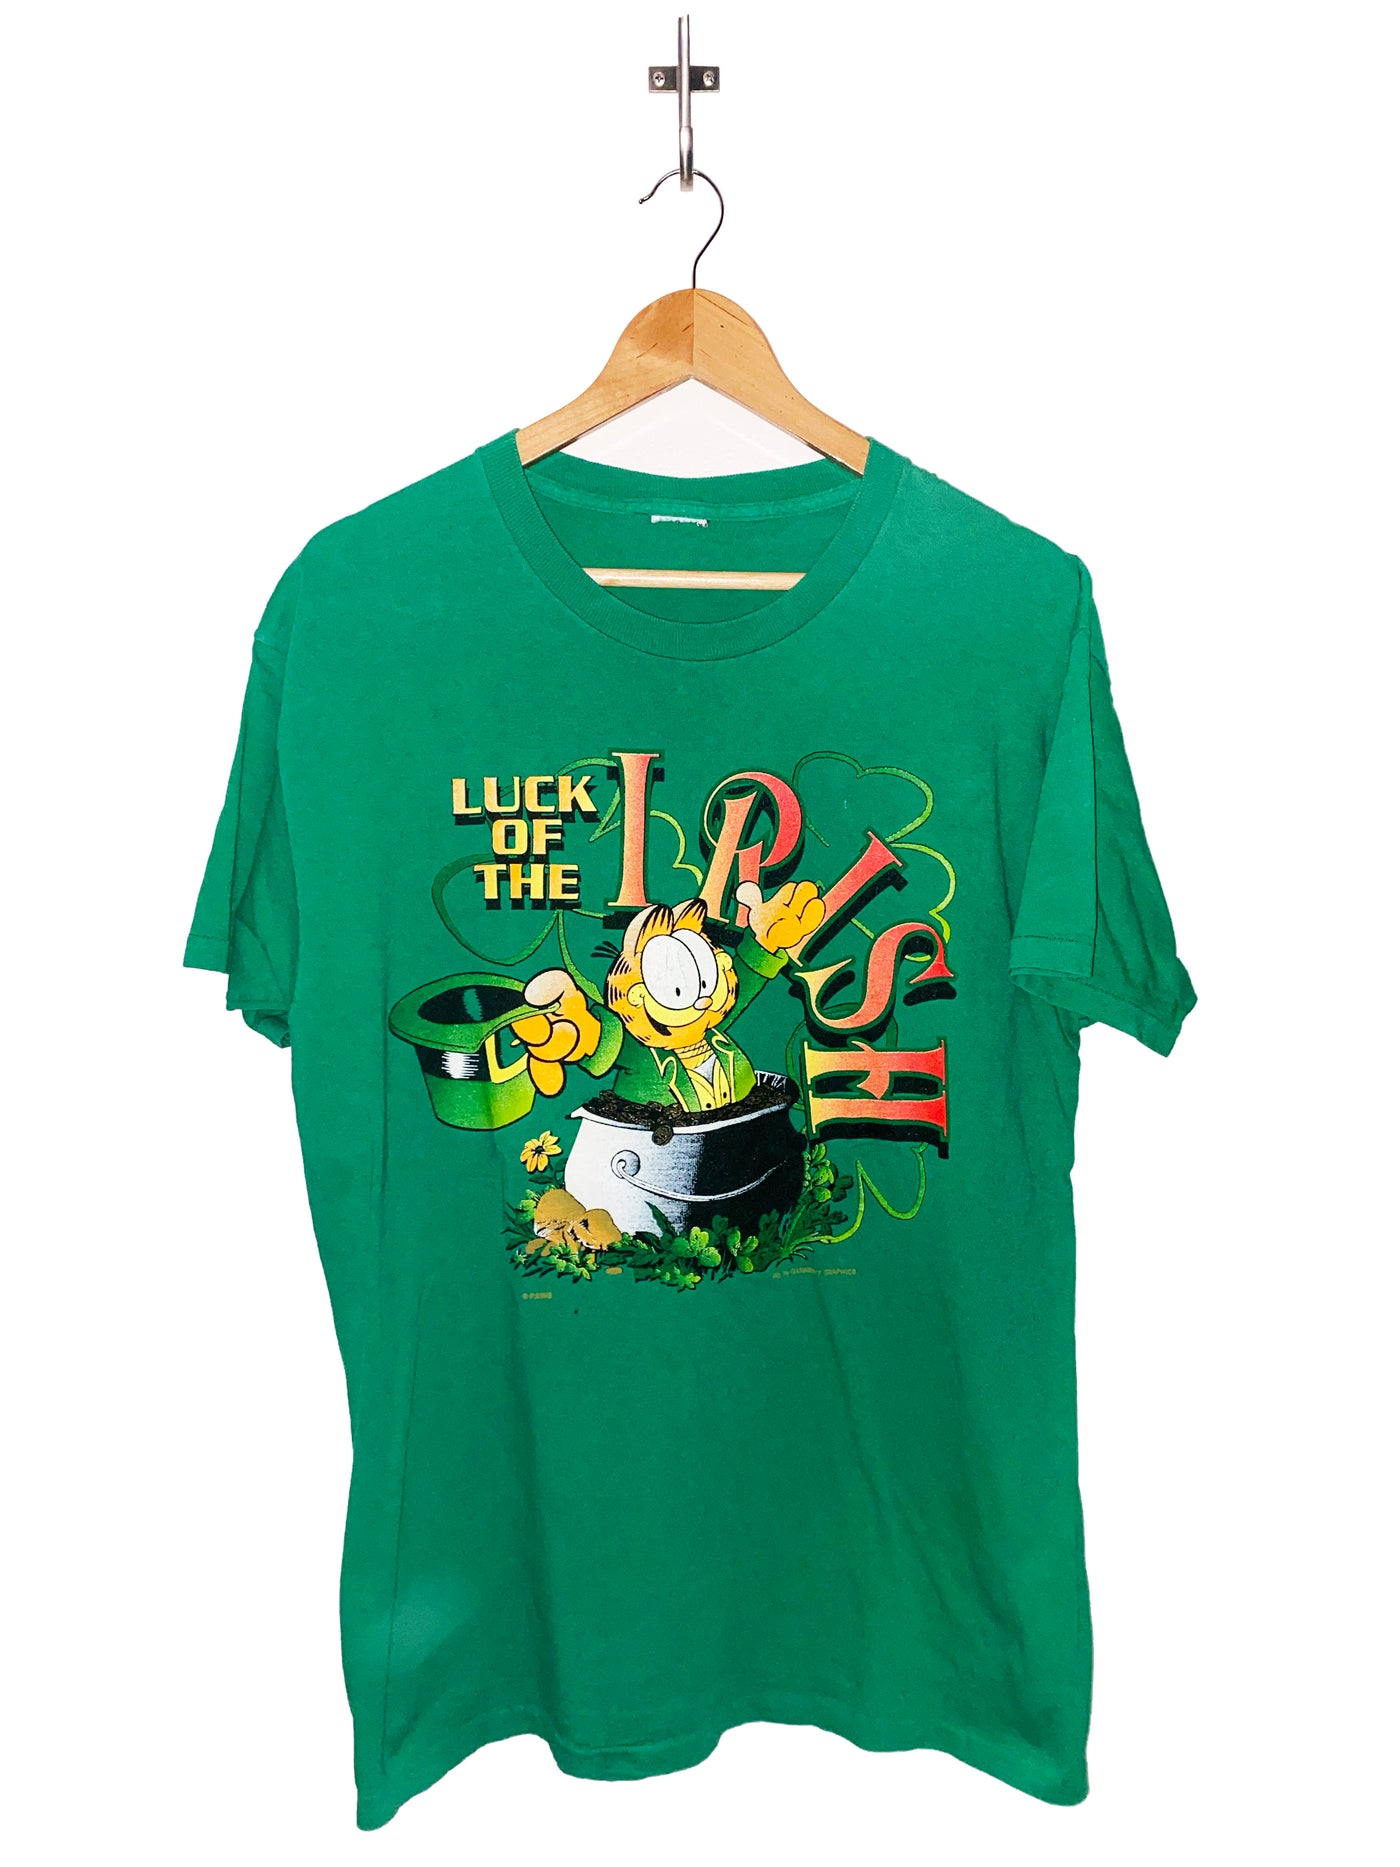 Vintage 90s Garfield ‘Luck of the Irish’ T-Shirt